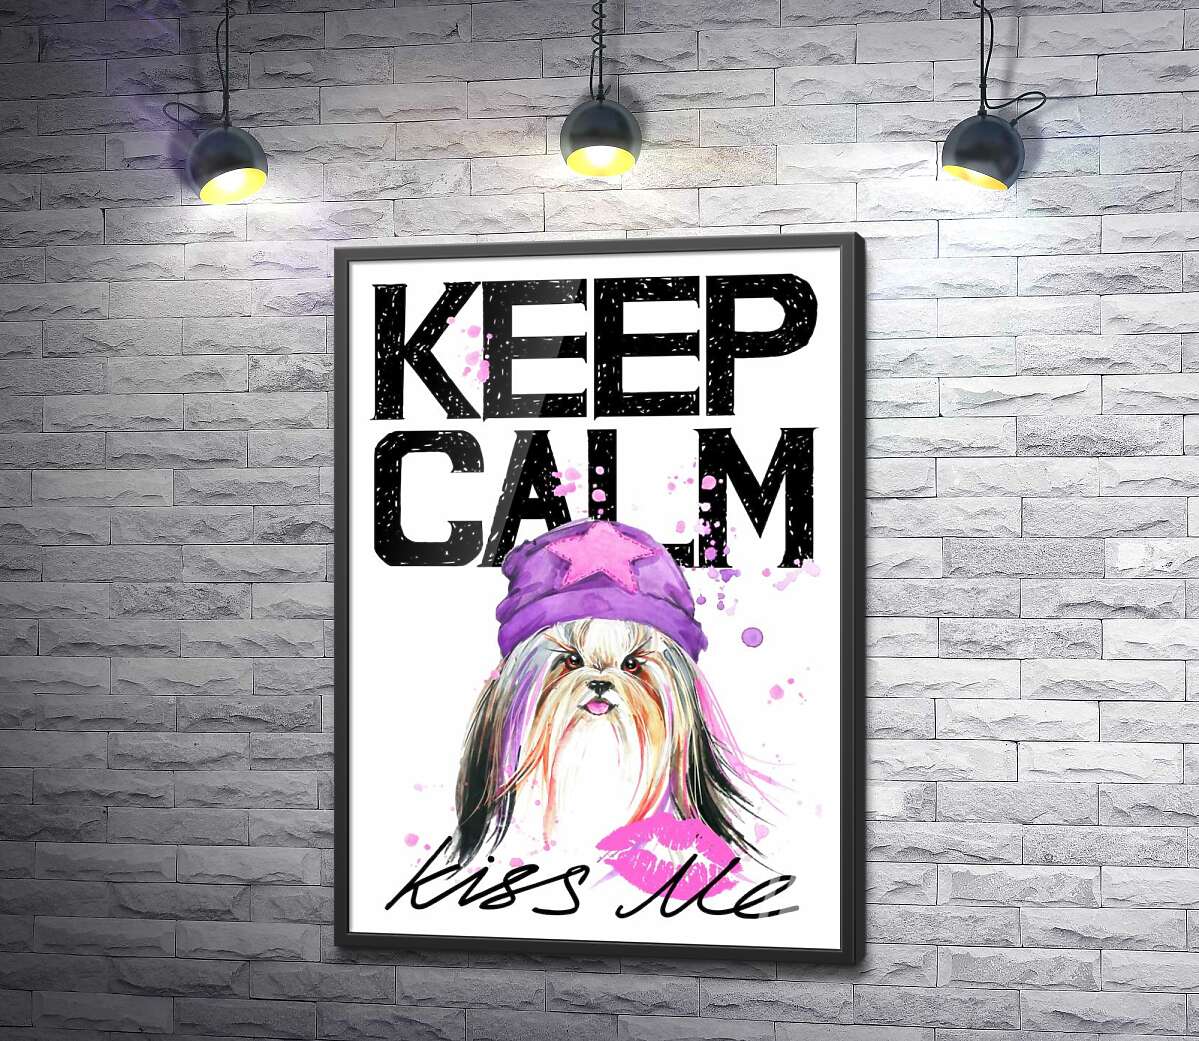 постер Модна собака серед напису "keep calm and kiss me"